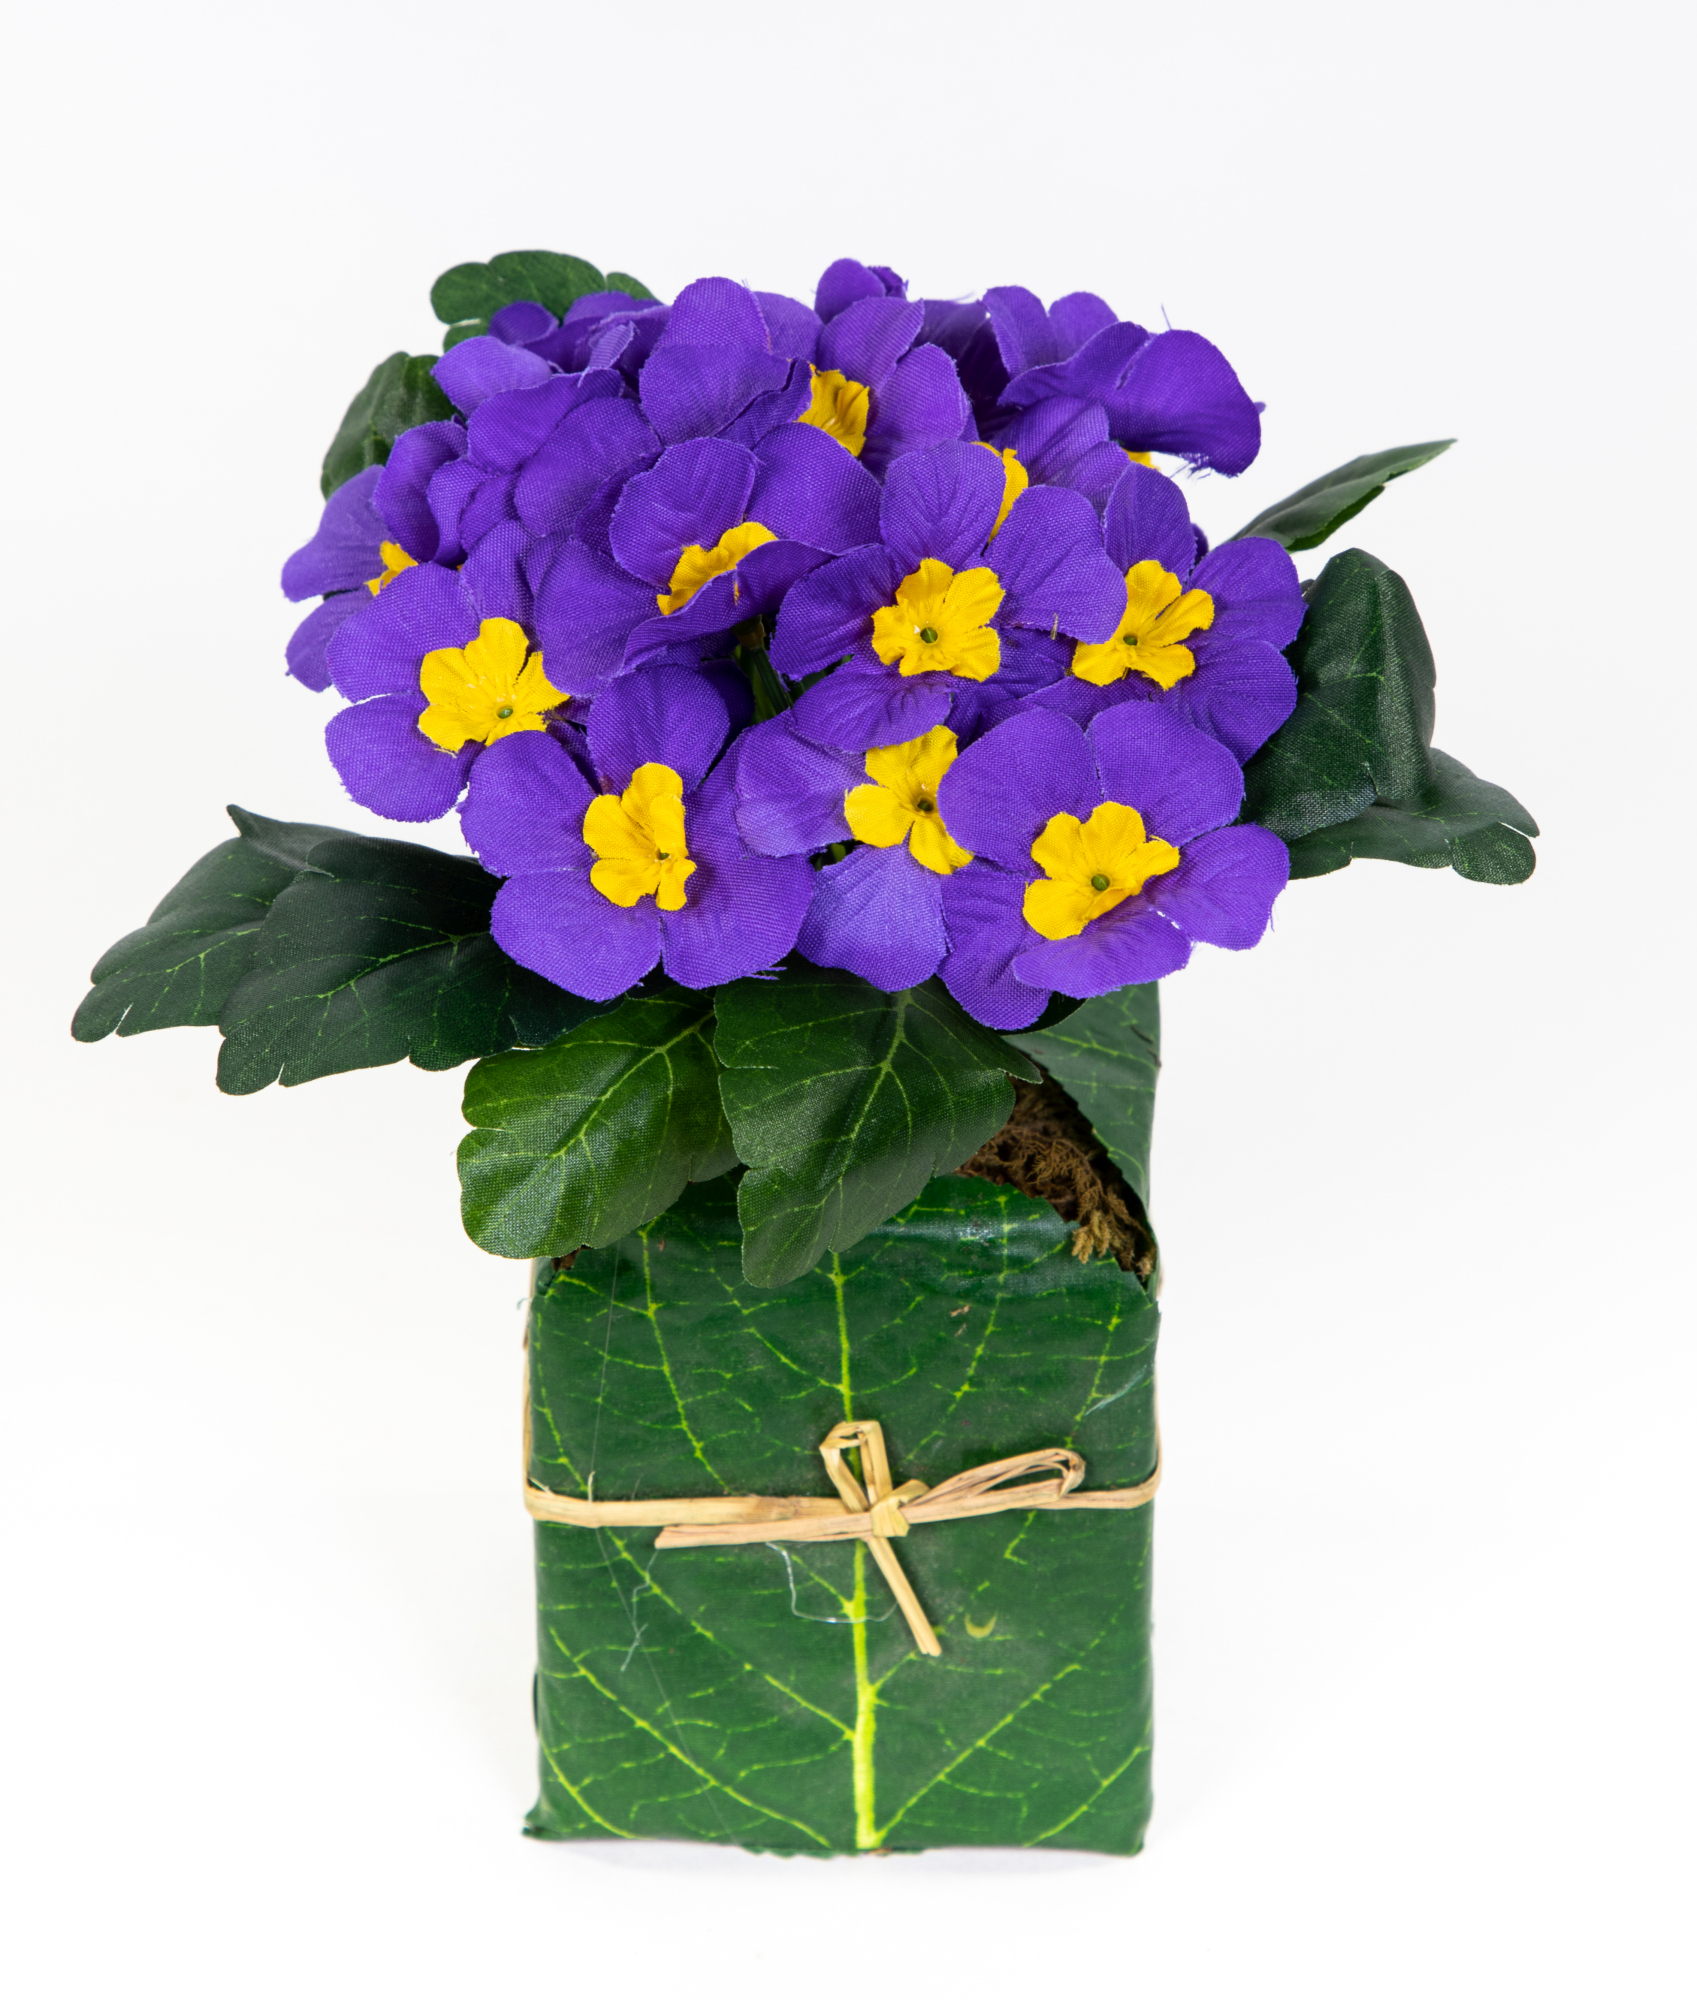 Künstliche Primel im Blatttopf 28cm lila PM künstliche Pflanzen Primelbusch Seidenblumen Kunstblumen Kunstpflanzen